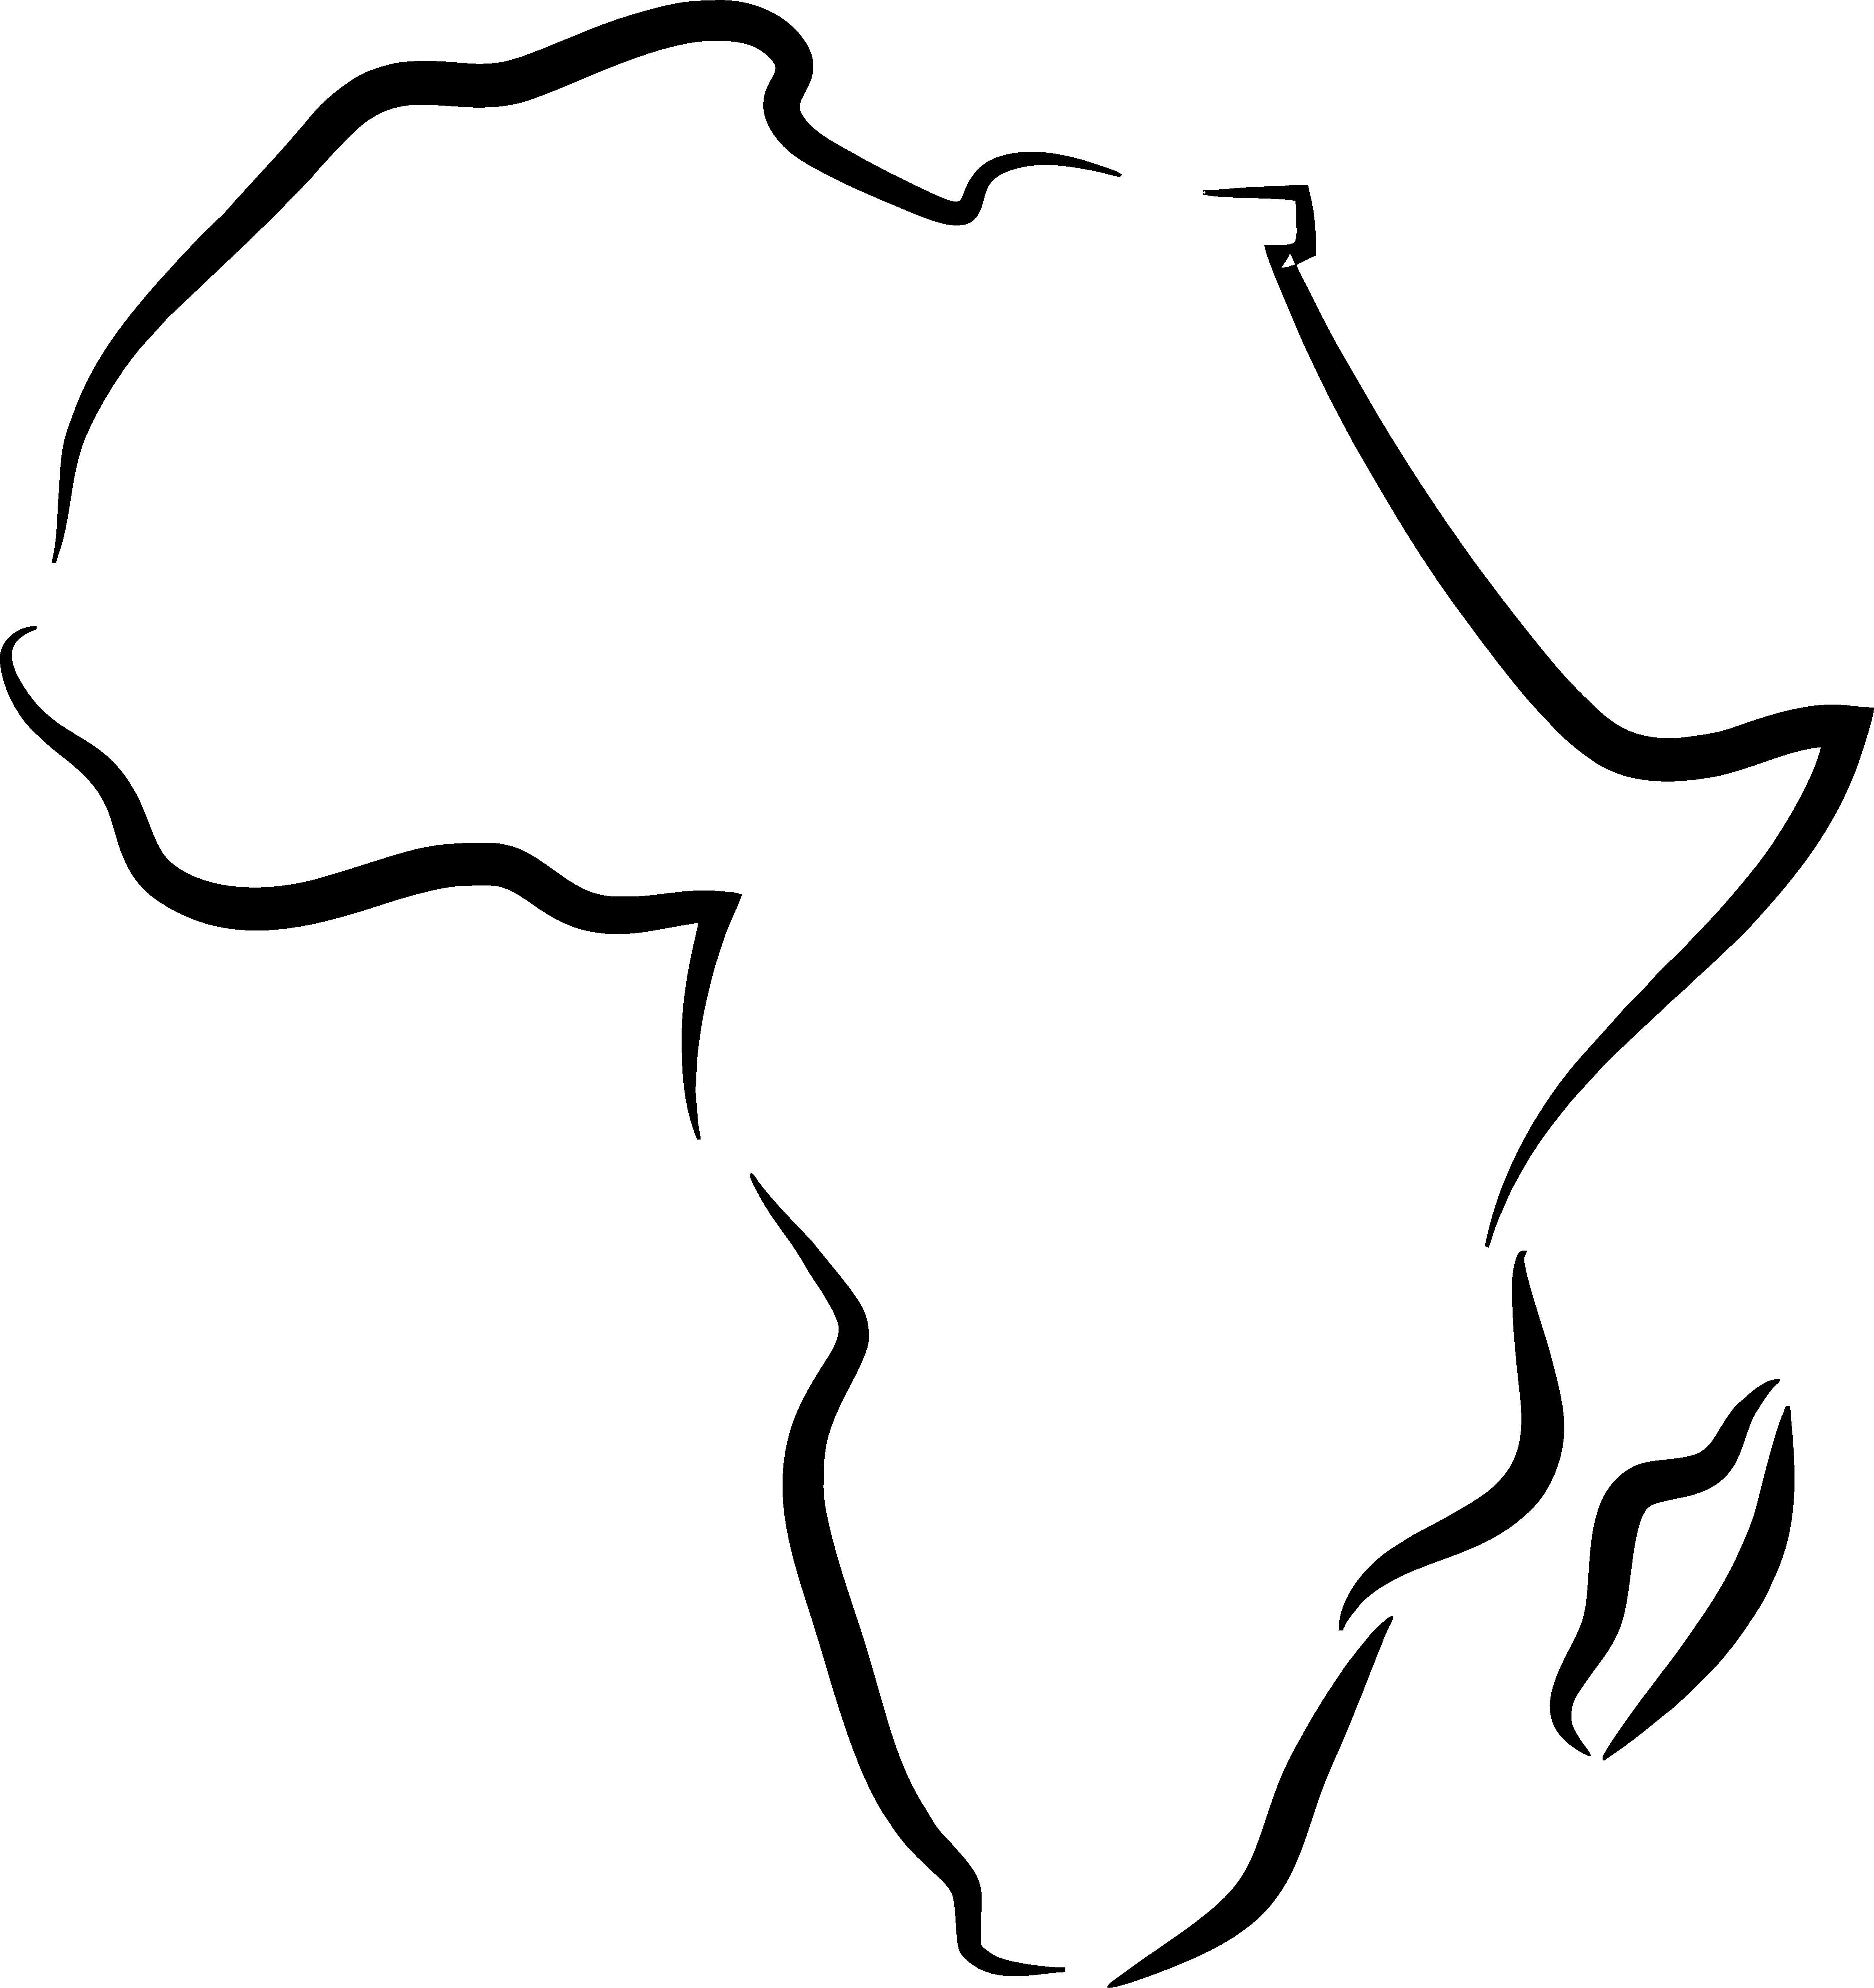 Afrika sa rozpadne na 2 časti a narazí do Európy. Ako zmení tvár neustále sa meniaceho sveta?